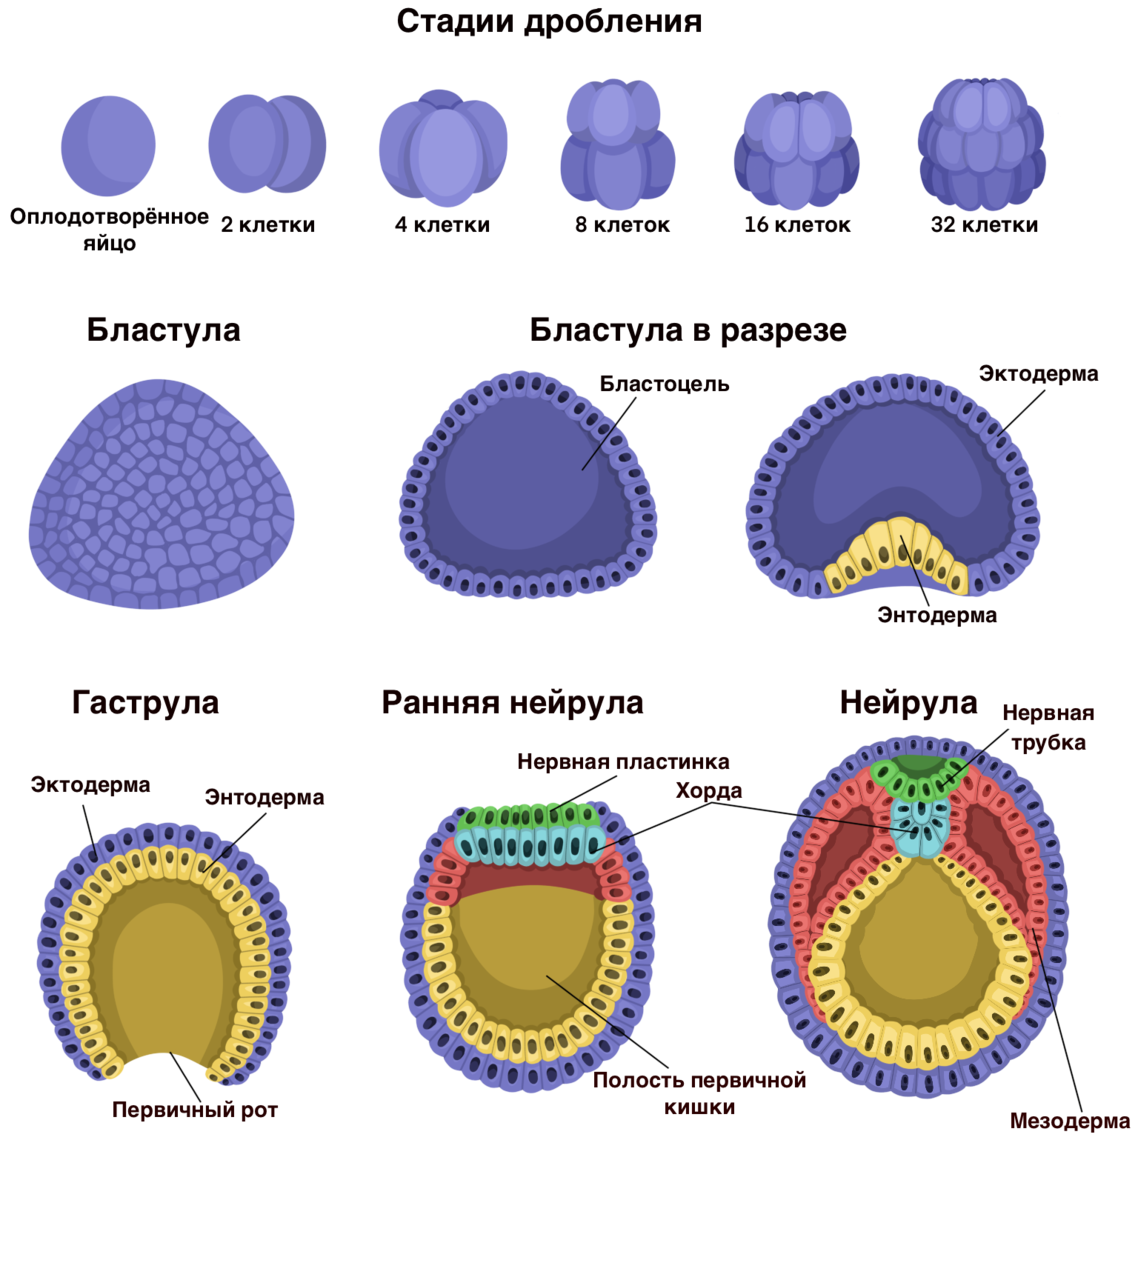 Этапы эмбриогенеза животных